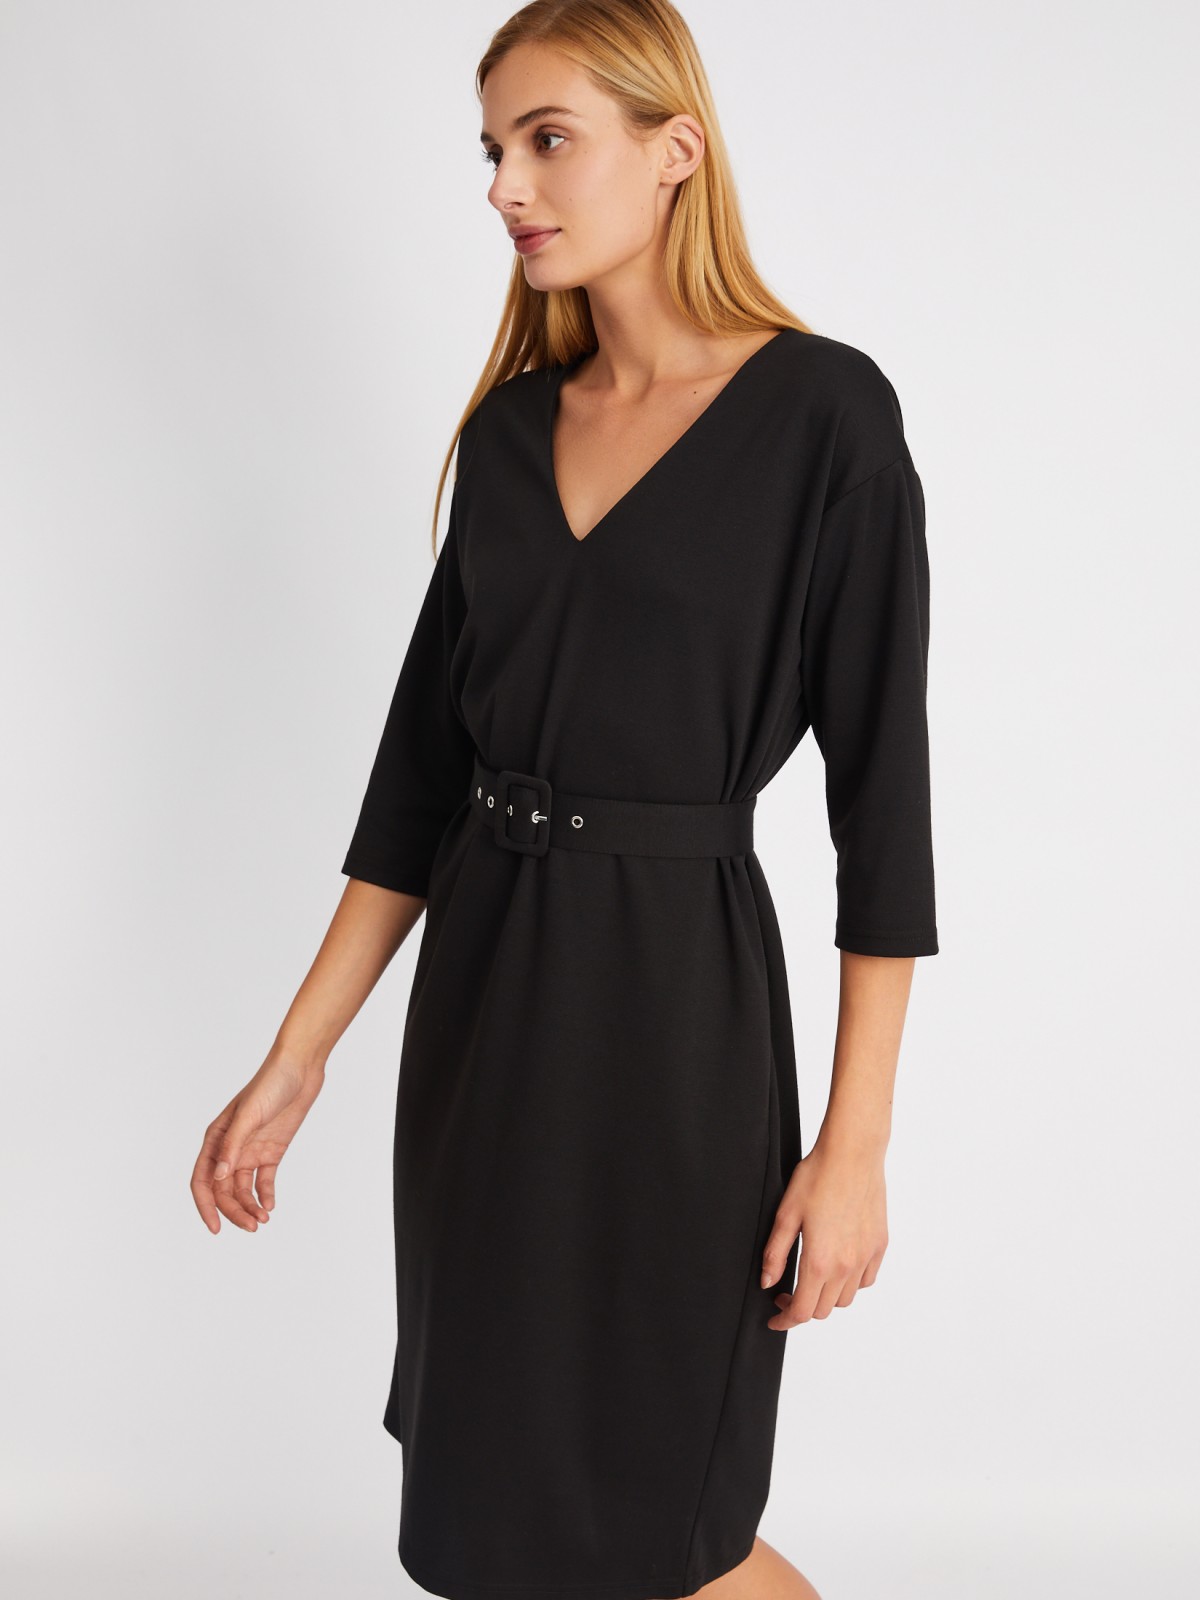 Платье с укороченным рукавом и ремнём на талии zolla 024118139361, цвет черный, размер S - фото 5